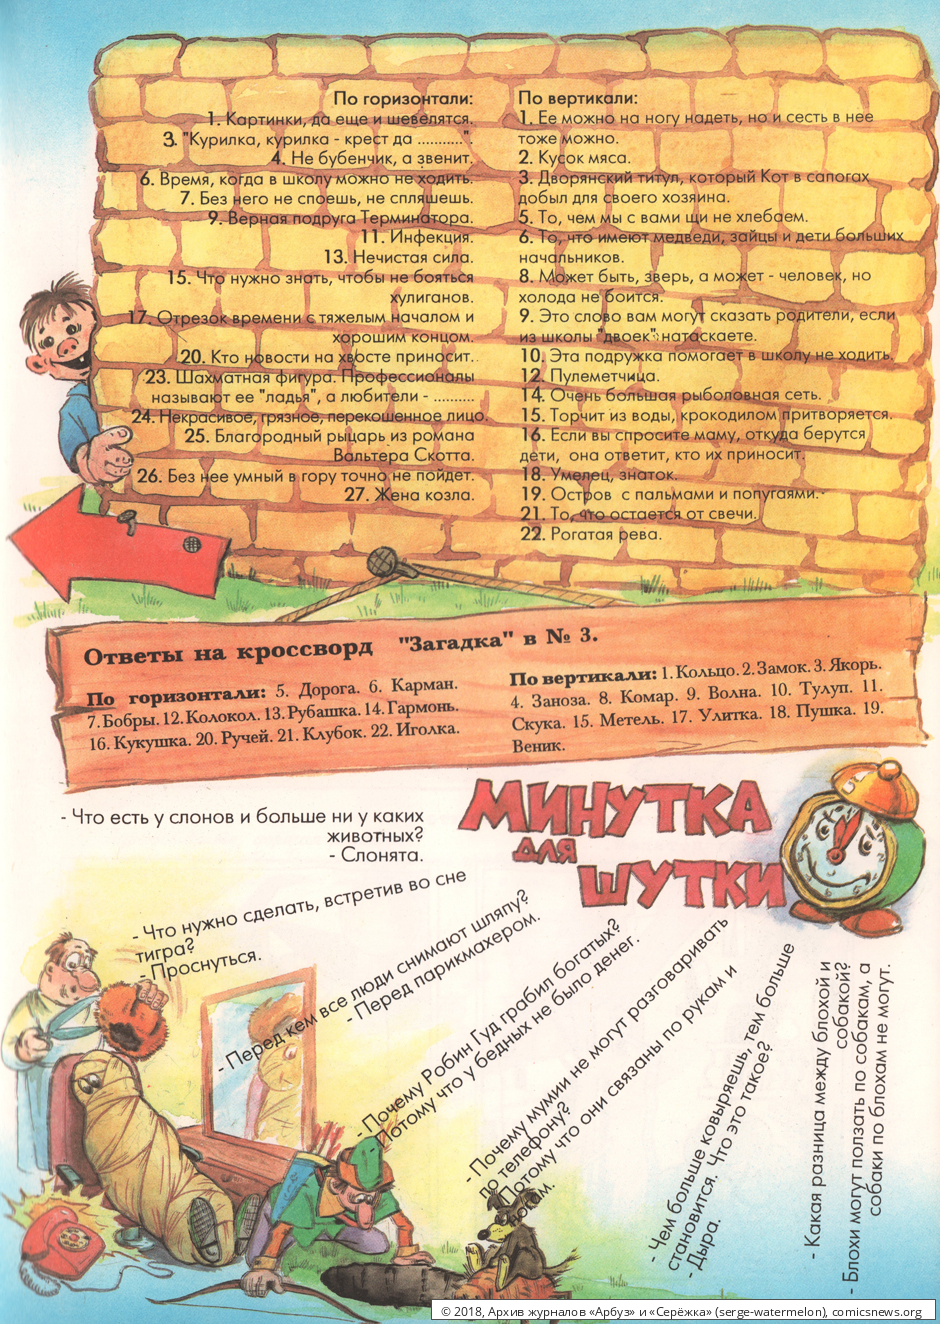 № 6 ("Серёжка" № 4 / 1995) - Архив журналов «Арбуз» и «Серёжка»